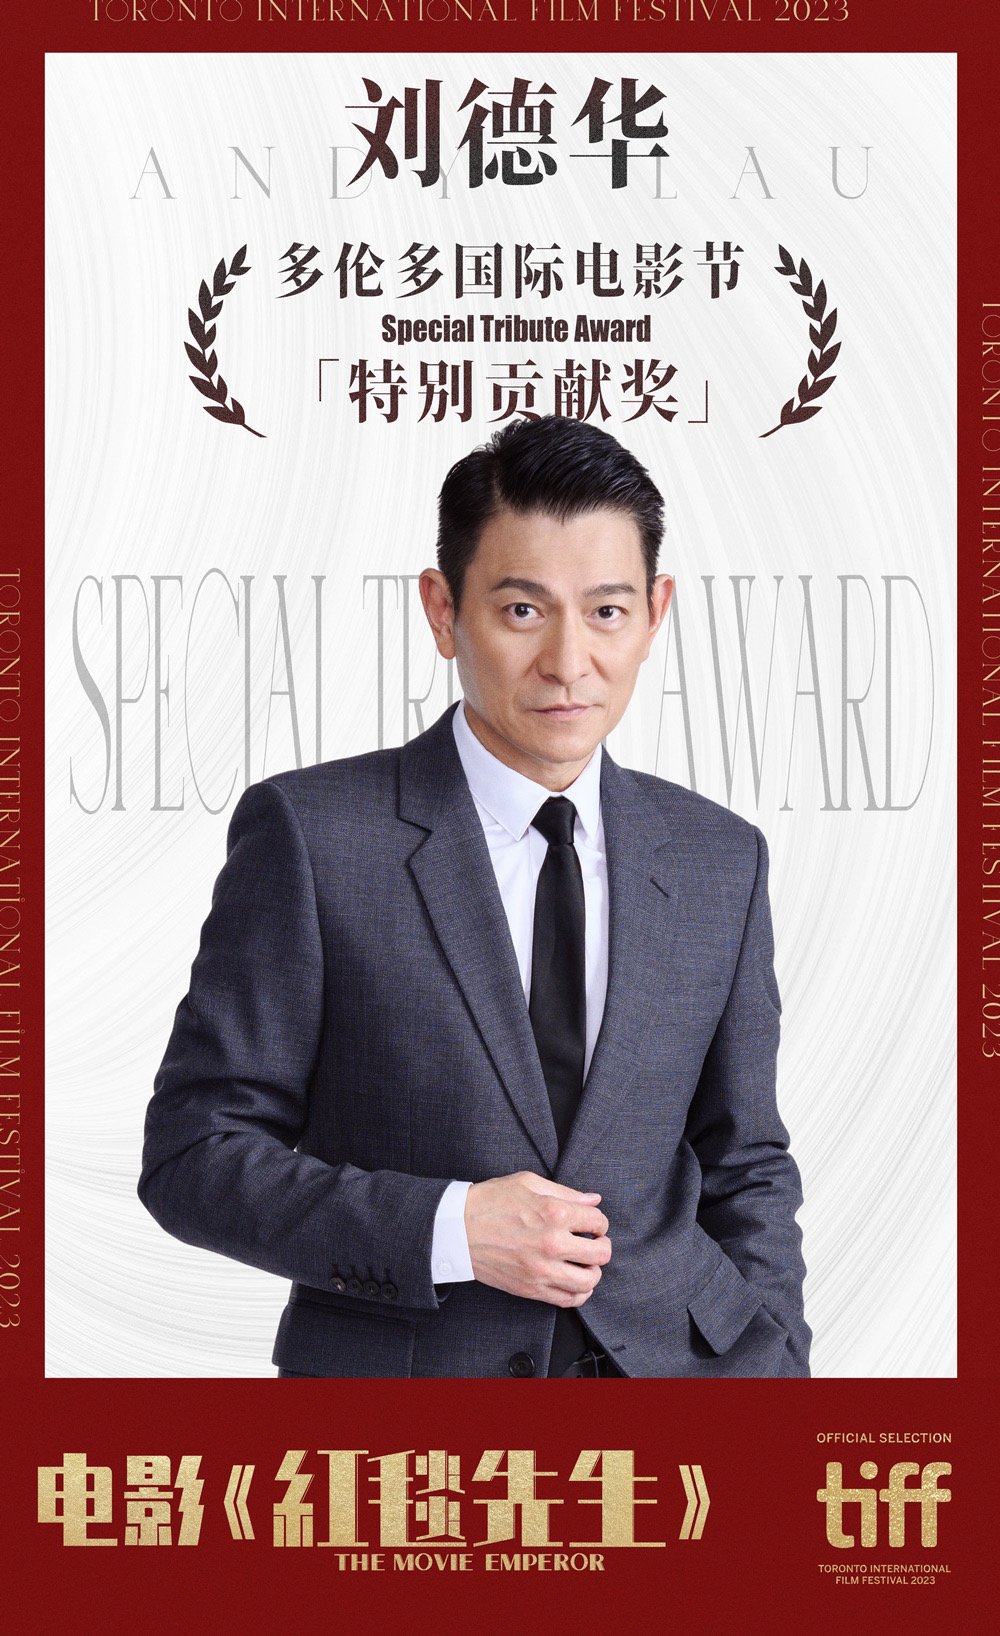 劉德華獲得多倫多國際電影節「特別貢獻獎」。 片方供圖